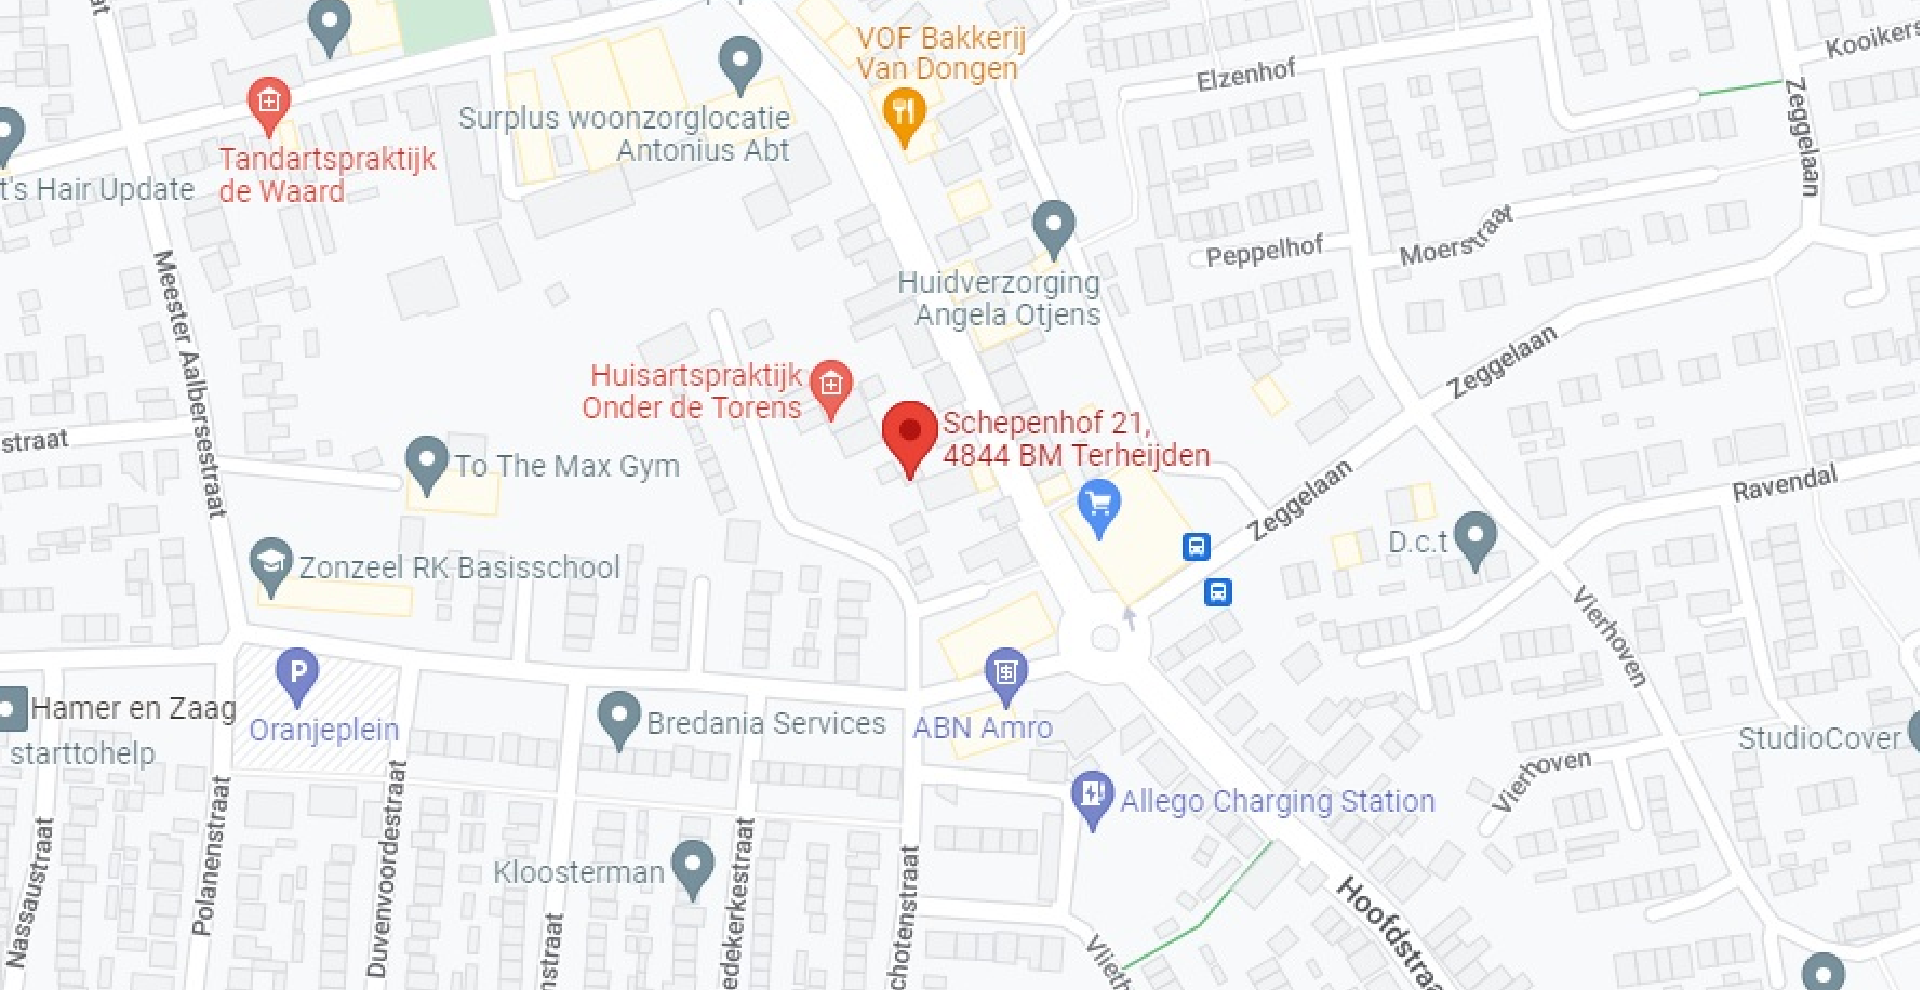 Locatie van Schepenhof Fysio in Google Maps